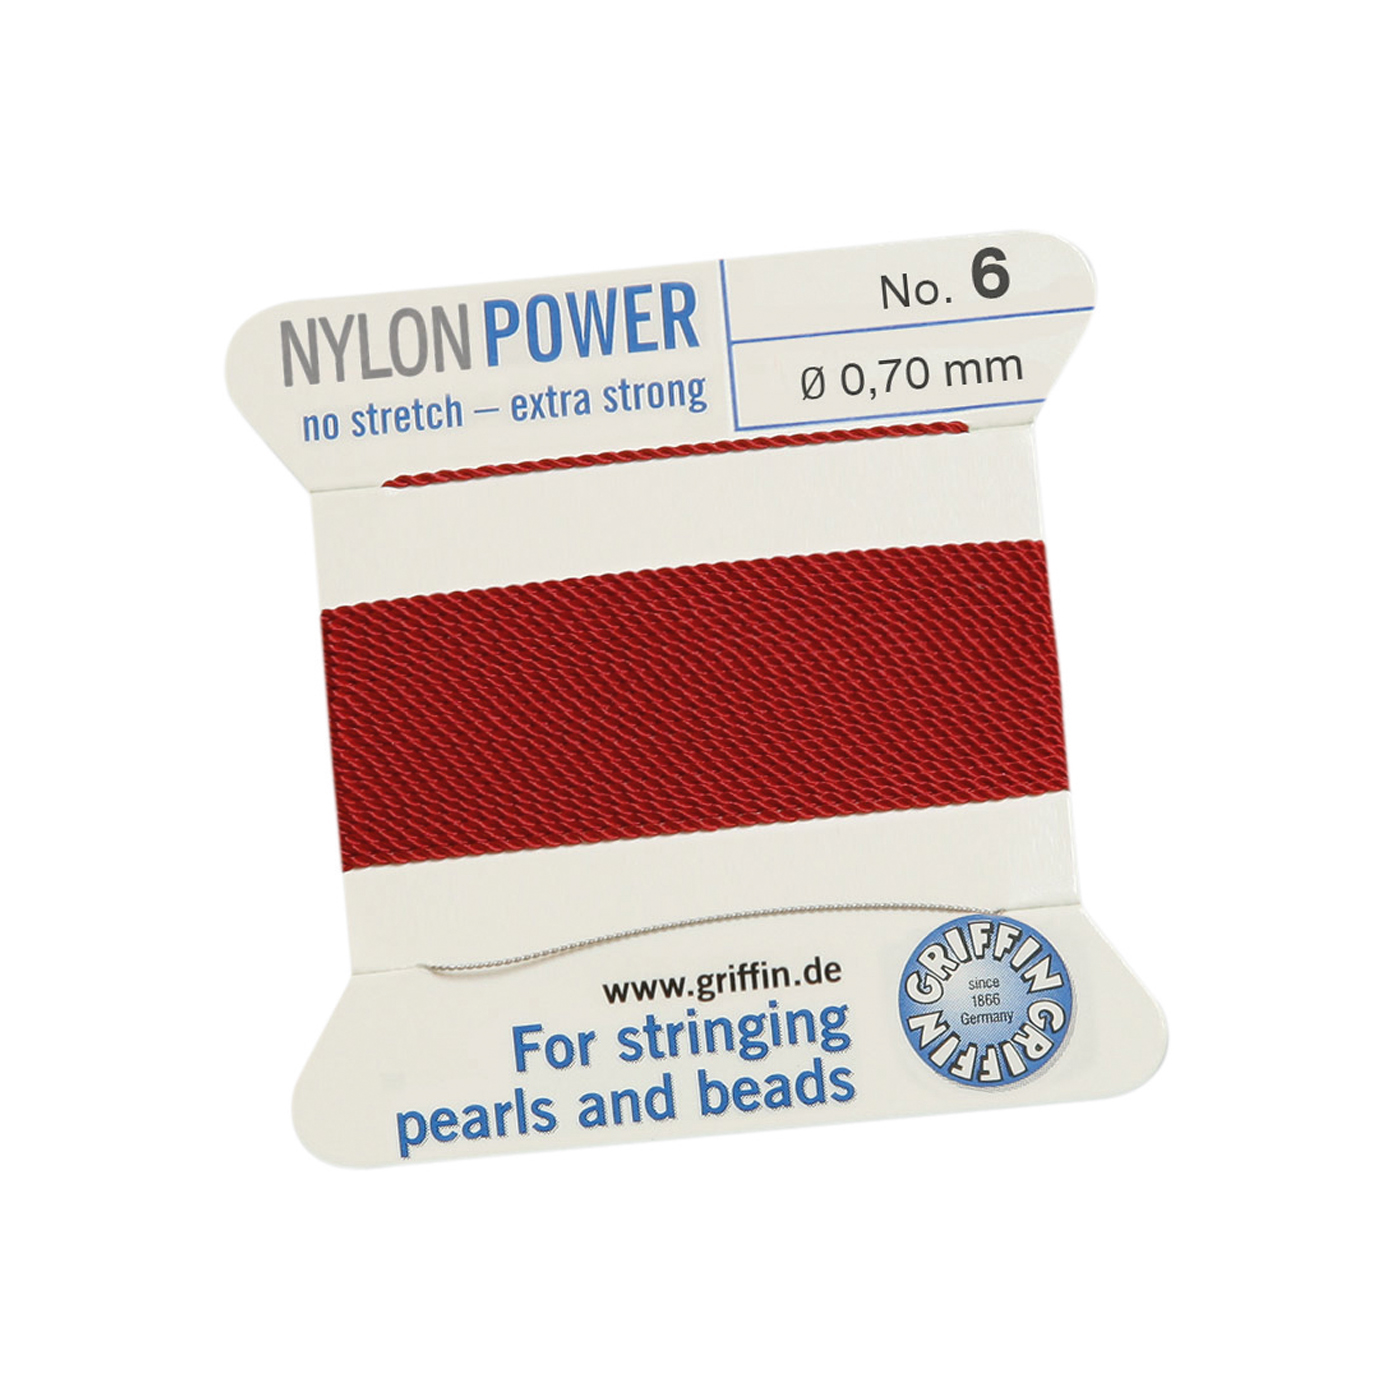 Bead Cord NylonPower, Garnet Red, No. 6 - 2 m